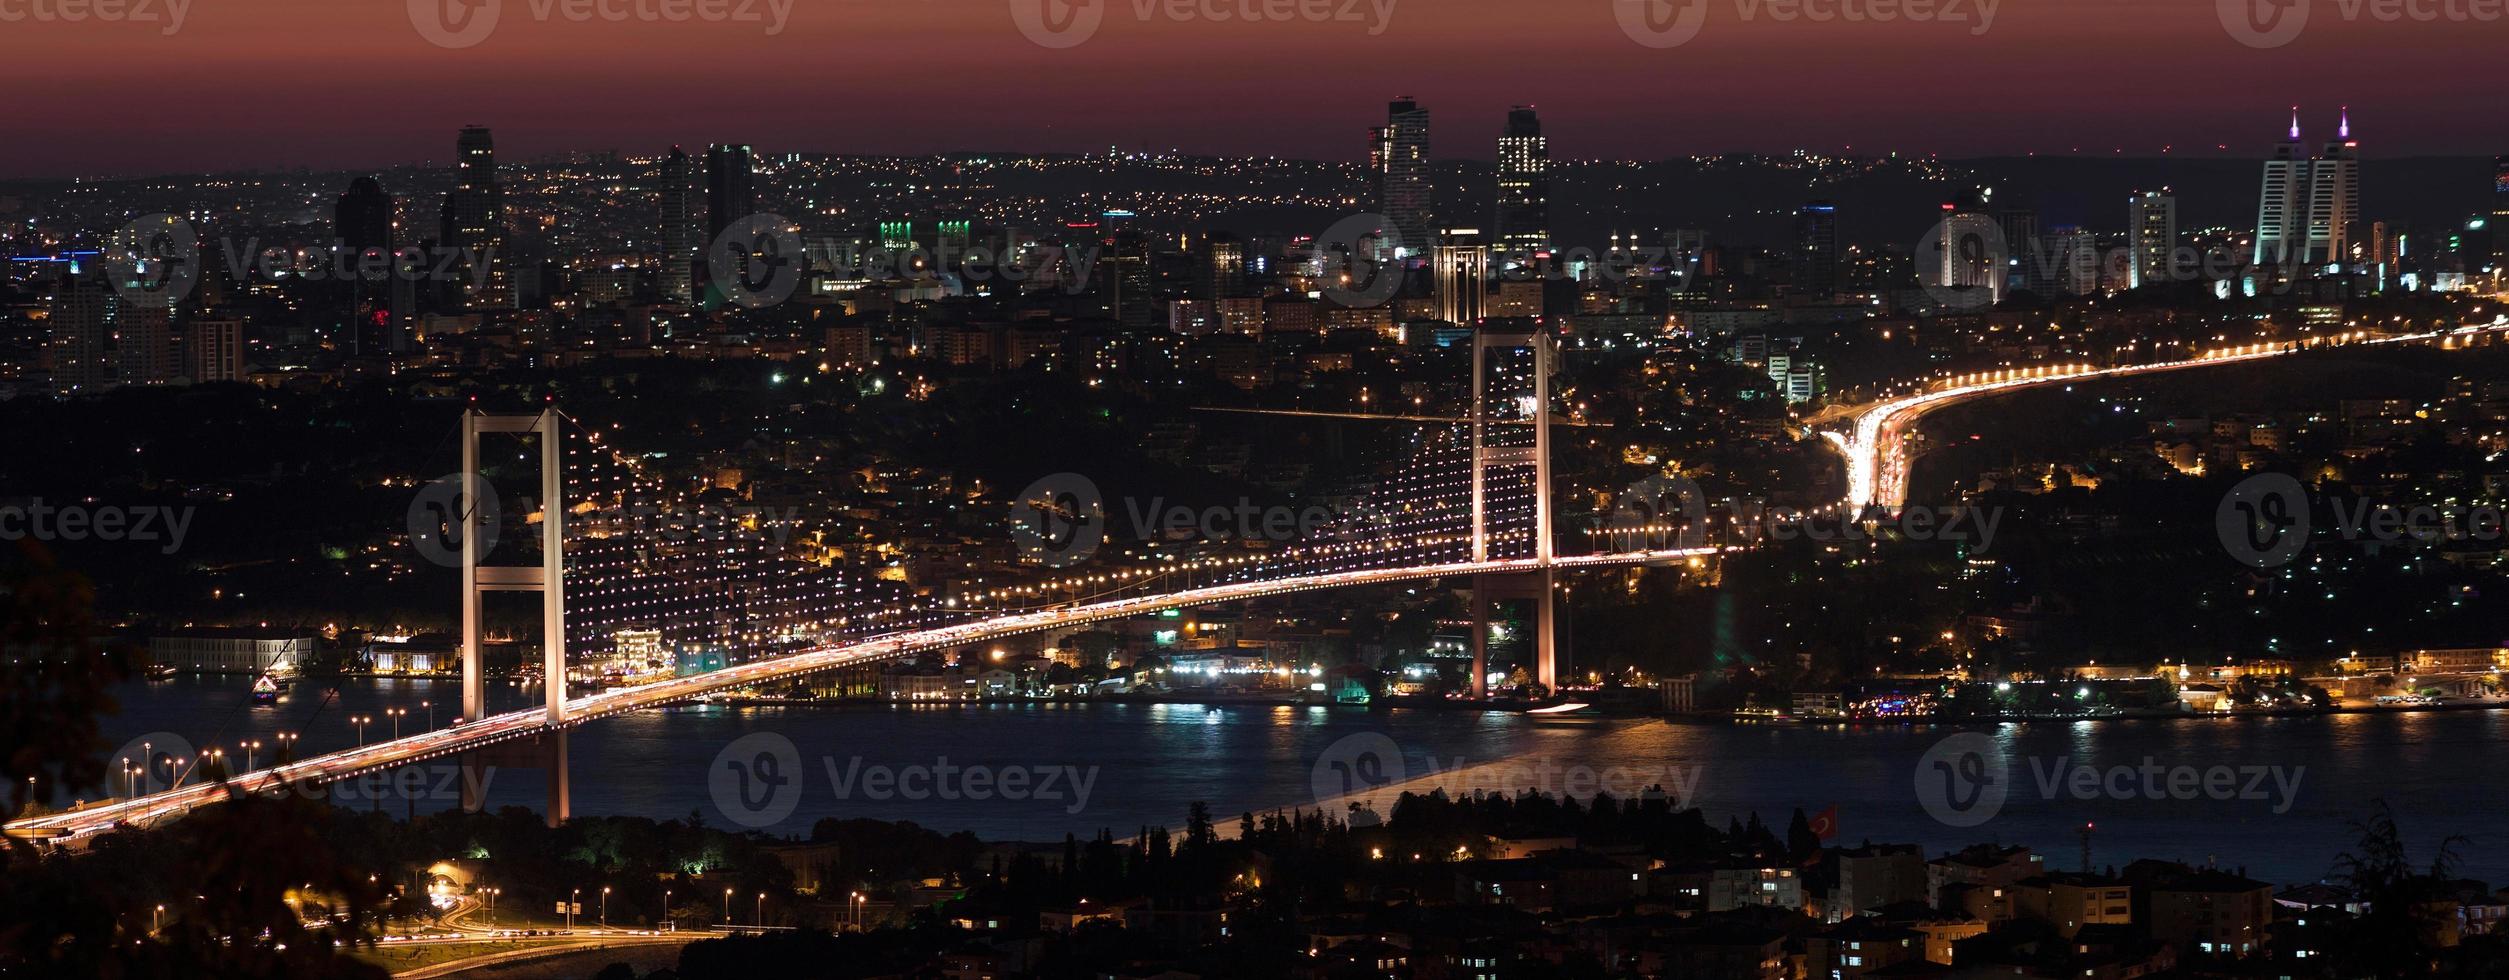 puente del Bósforo en la noche foto